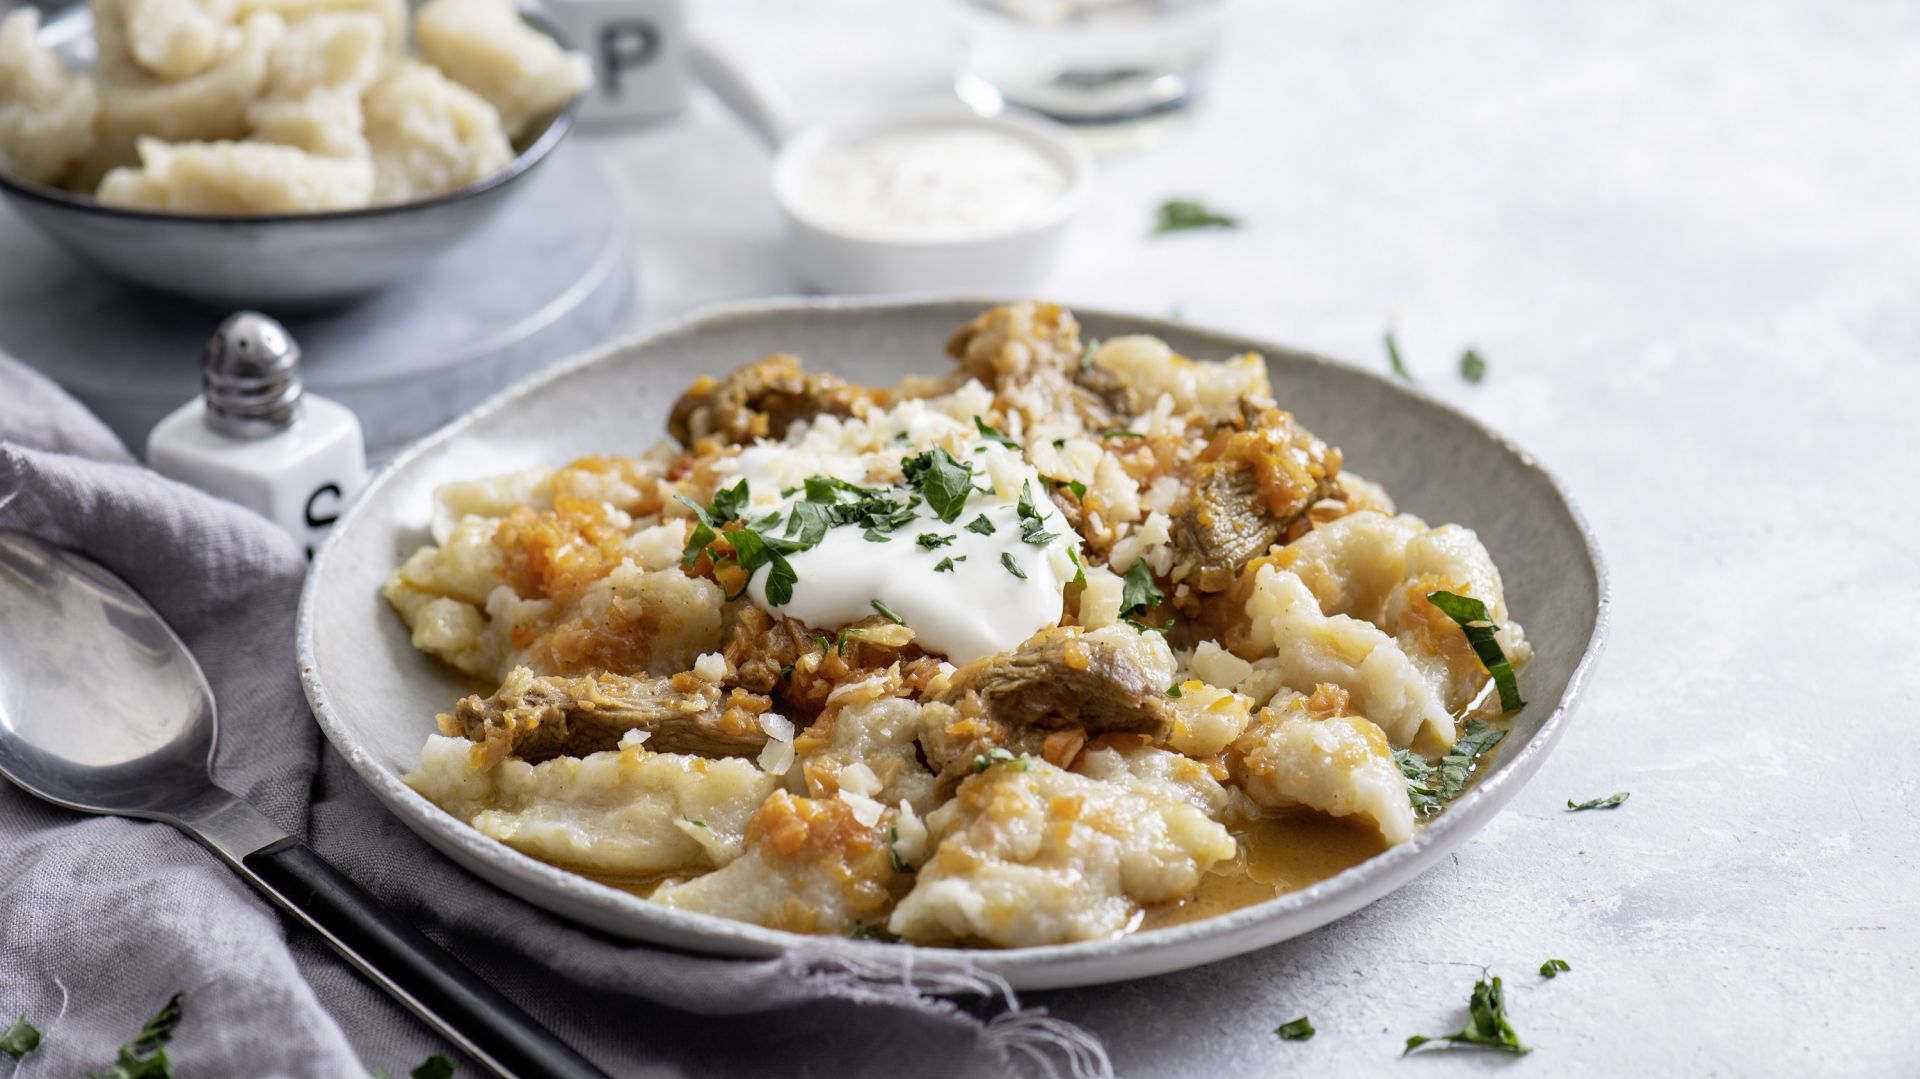 Moskole, kwaśnica, bombolki – poznajcie tradycyjną kuchnię Podhala!